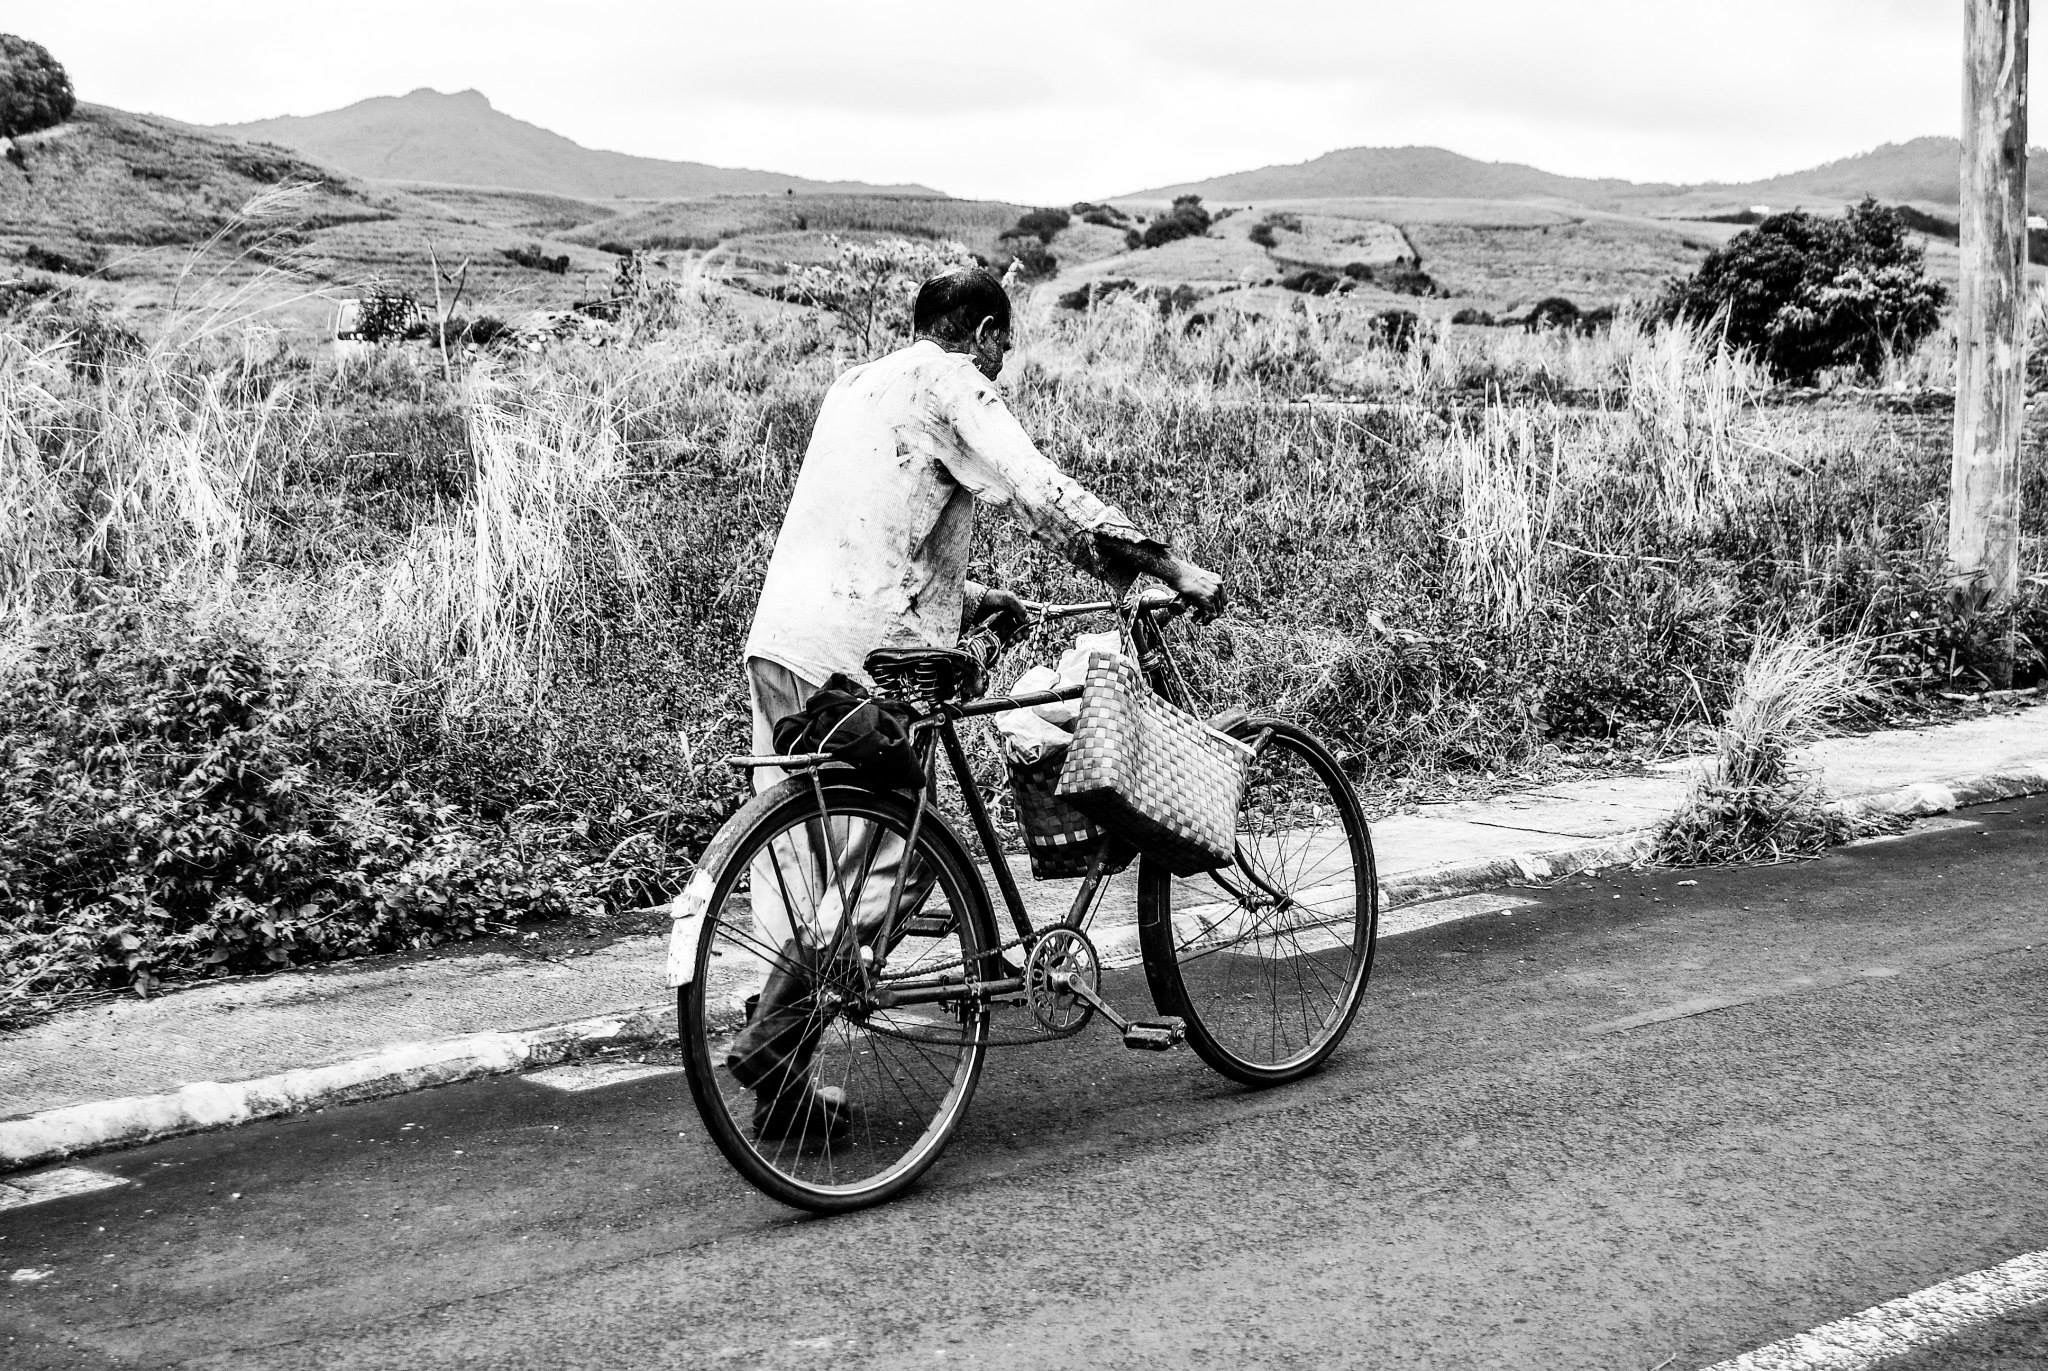 The Mauritius bike man 